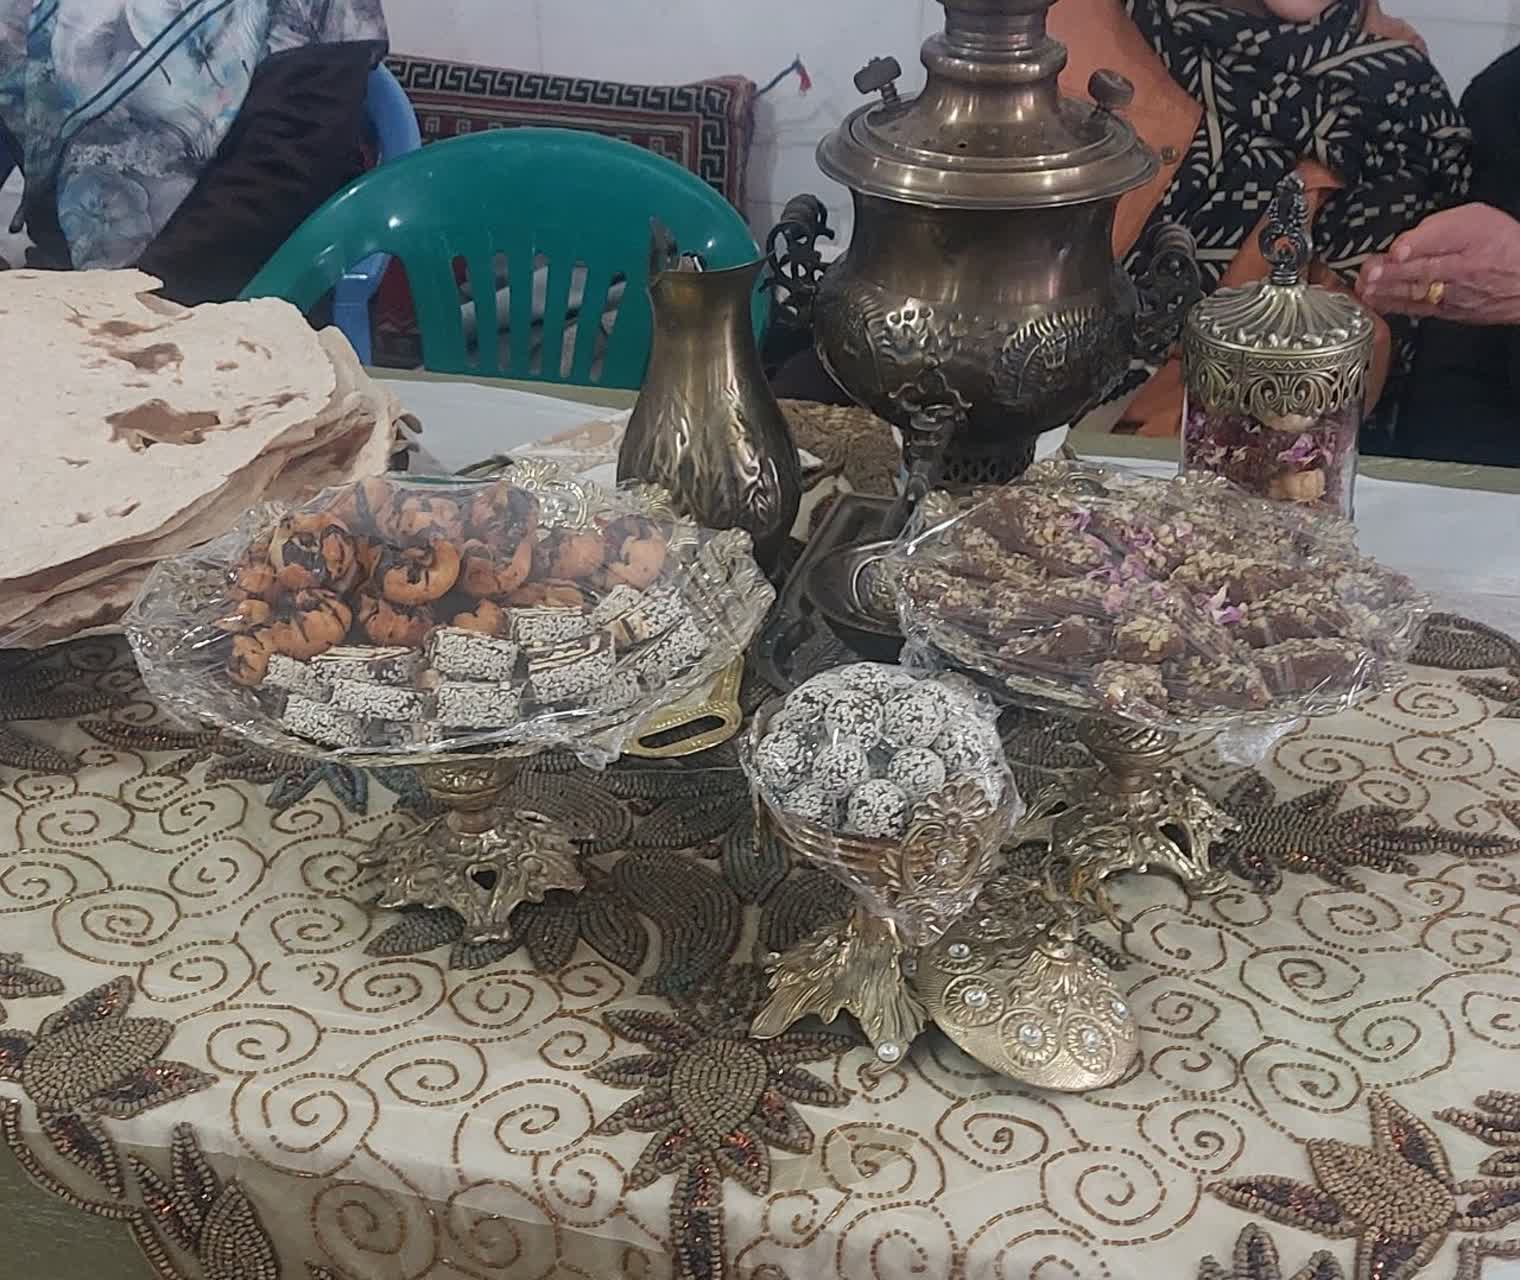 جشنواره غذا در روستای ریواسیجان تویسرکان برگزار شد